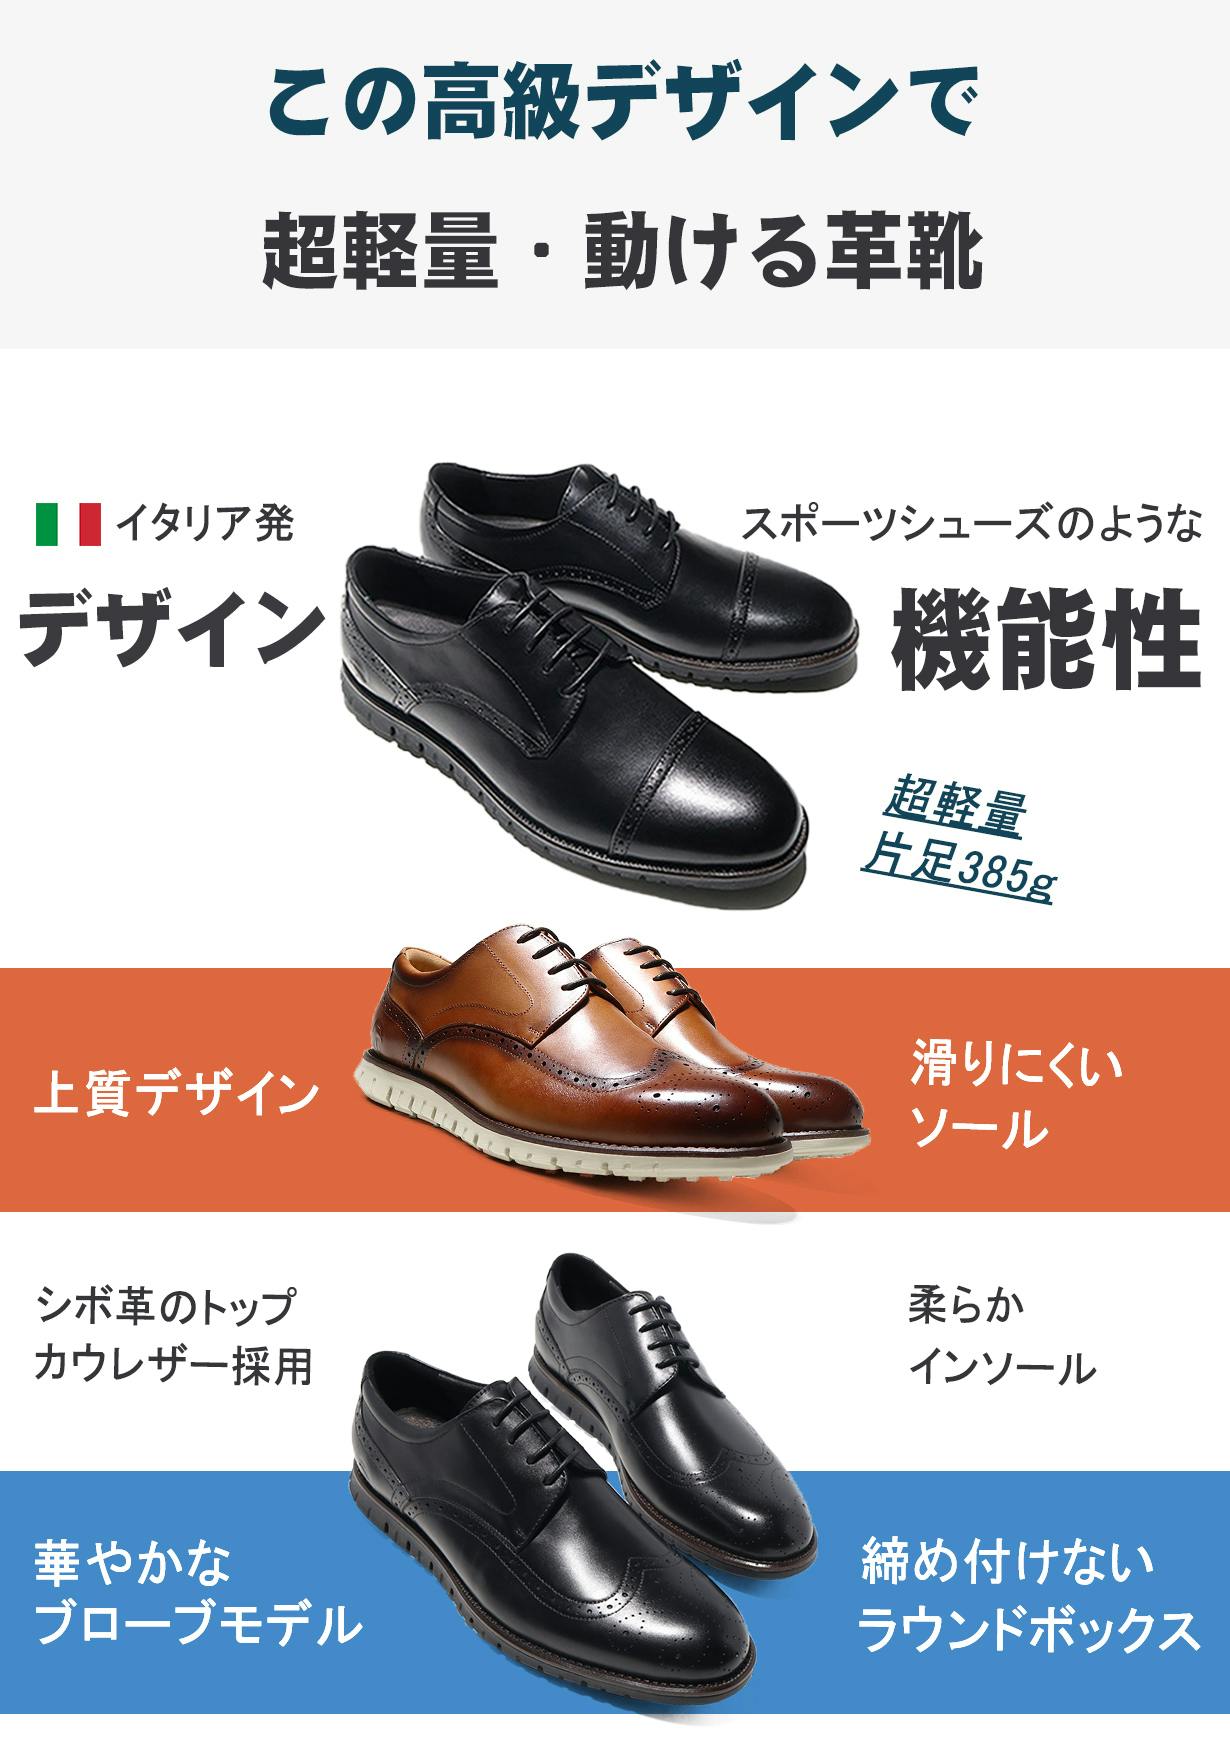 イタリアの旅行靴メーカーが本気で作った動ける革靴【AVOCCO】ビジネス ...